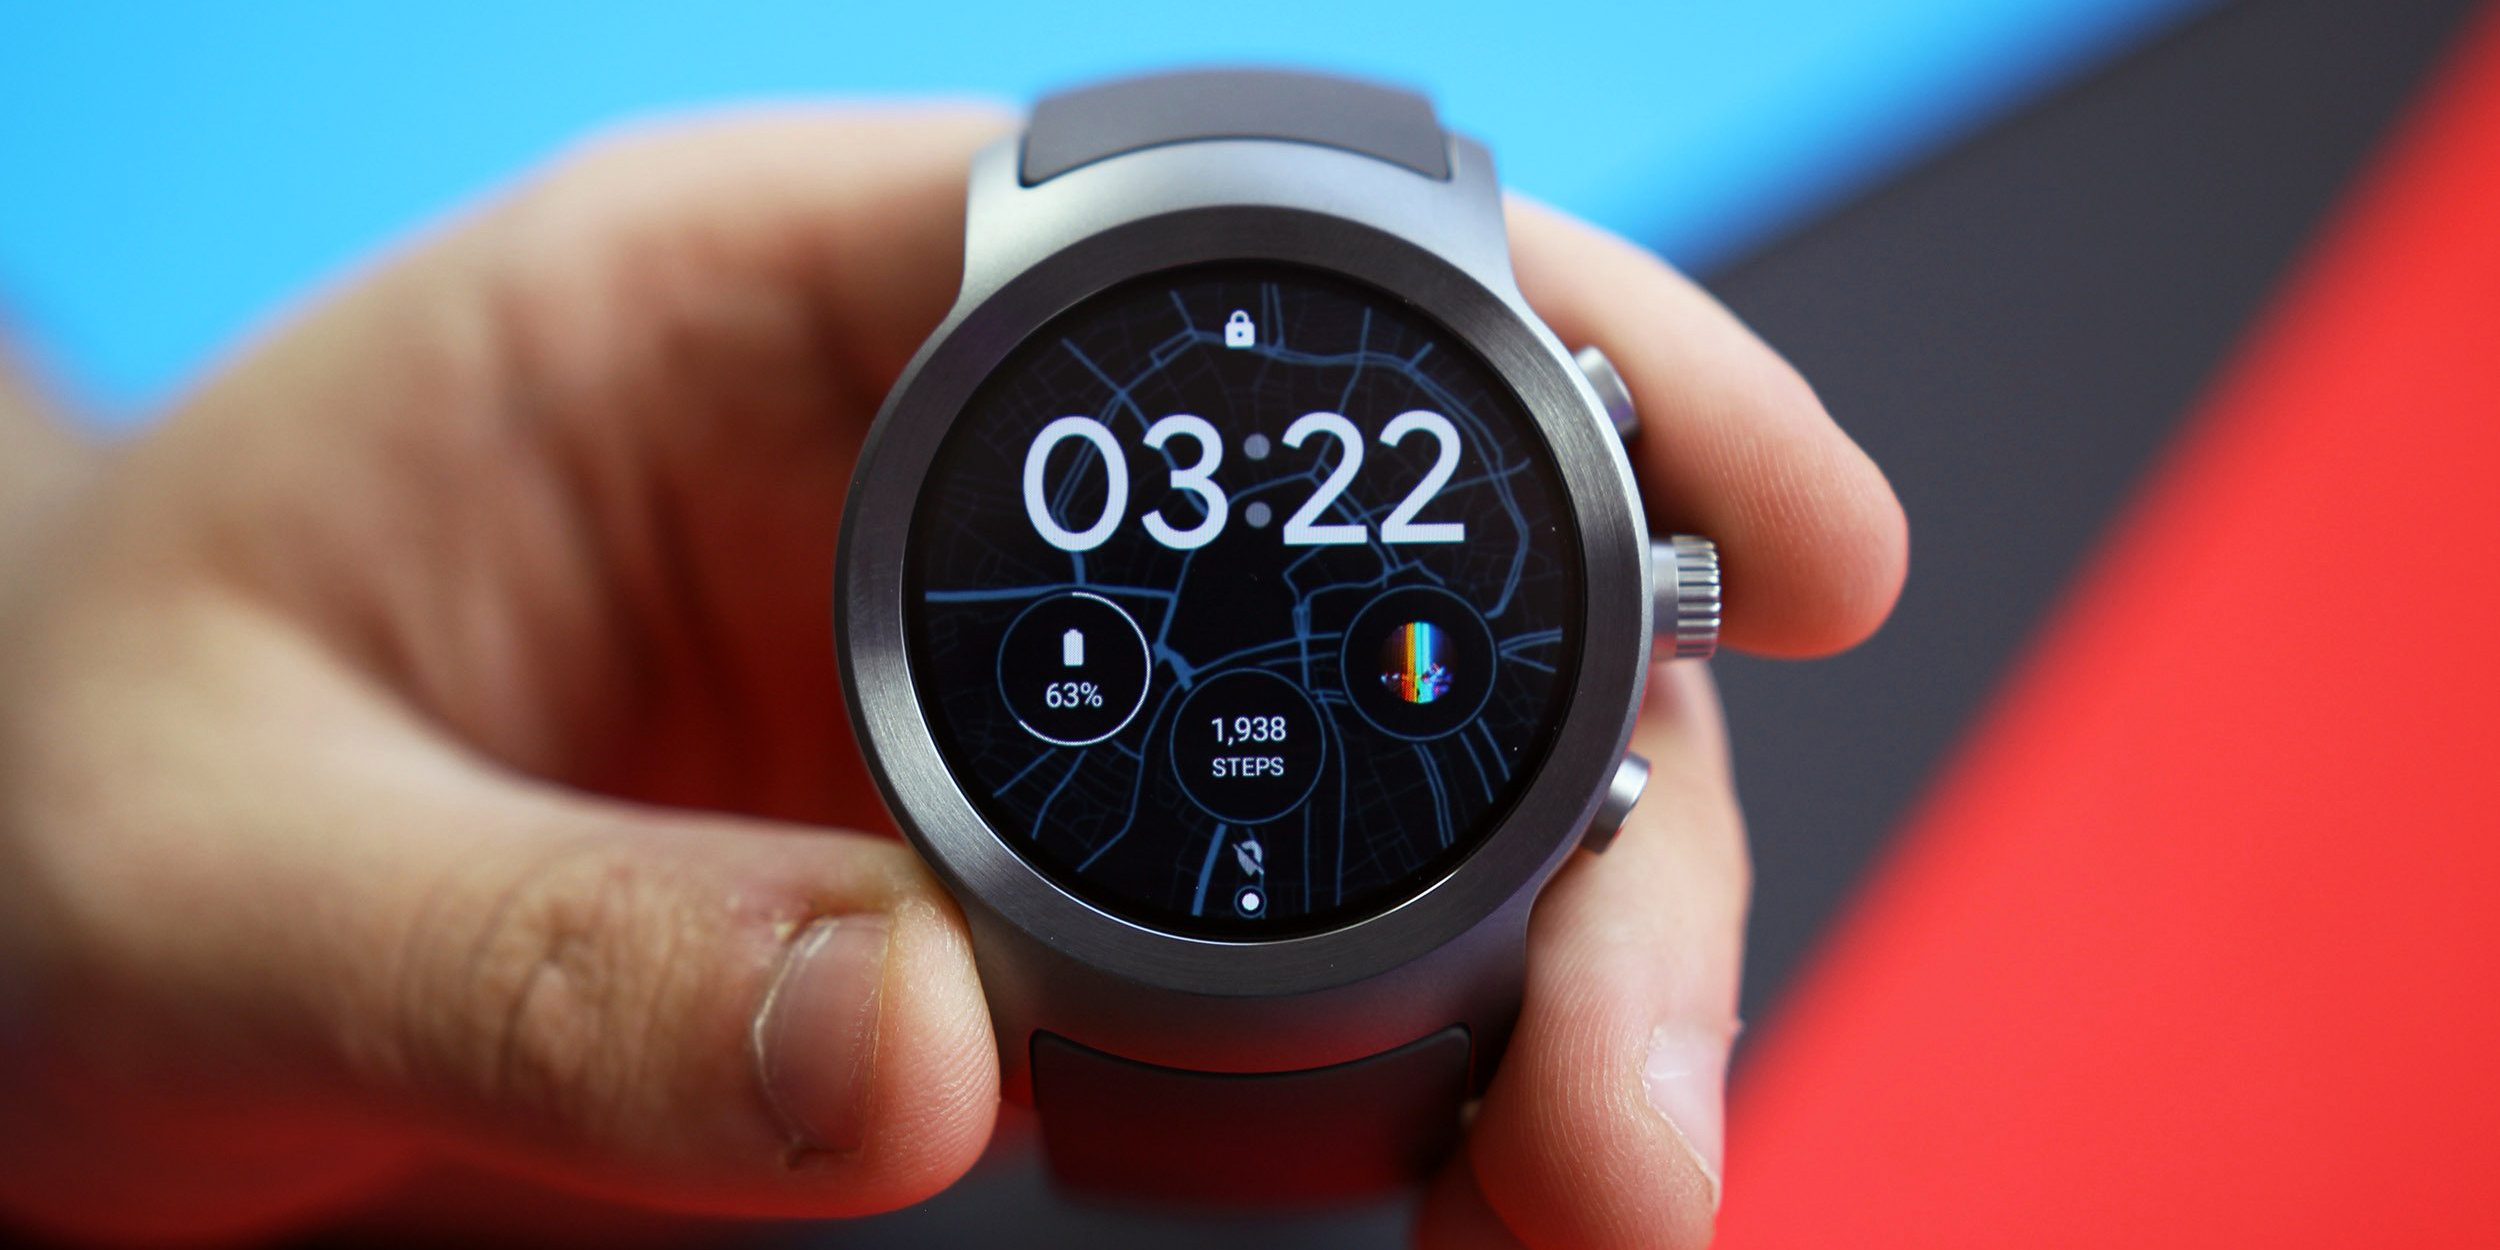 Wear время. Tizen os смарт часы. Android Wear часы. Смарт часы на базе Android Wear. Wear os часы.